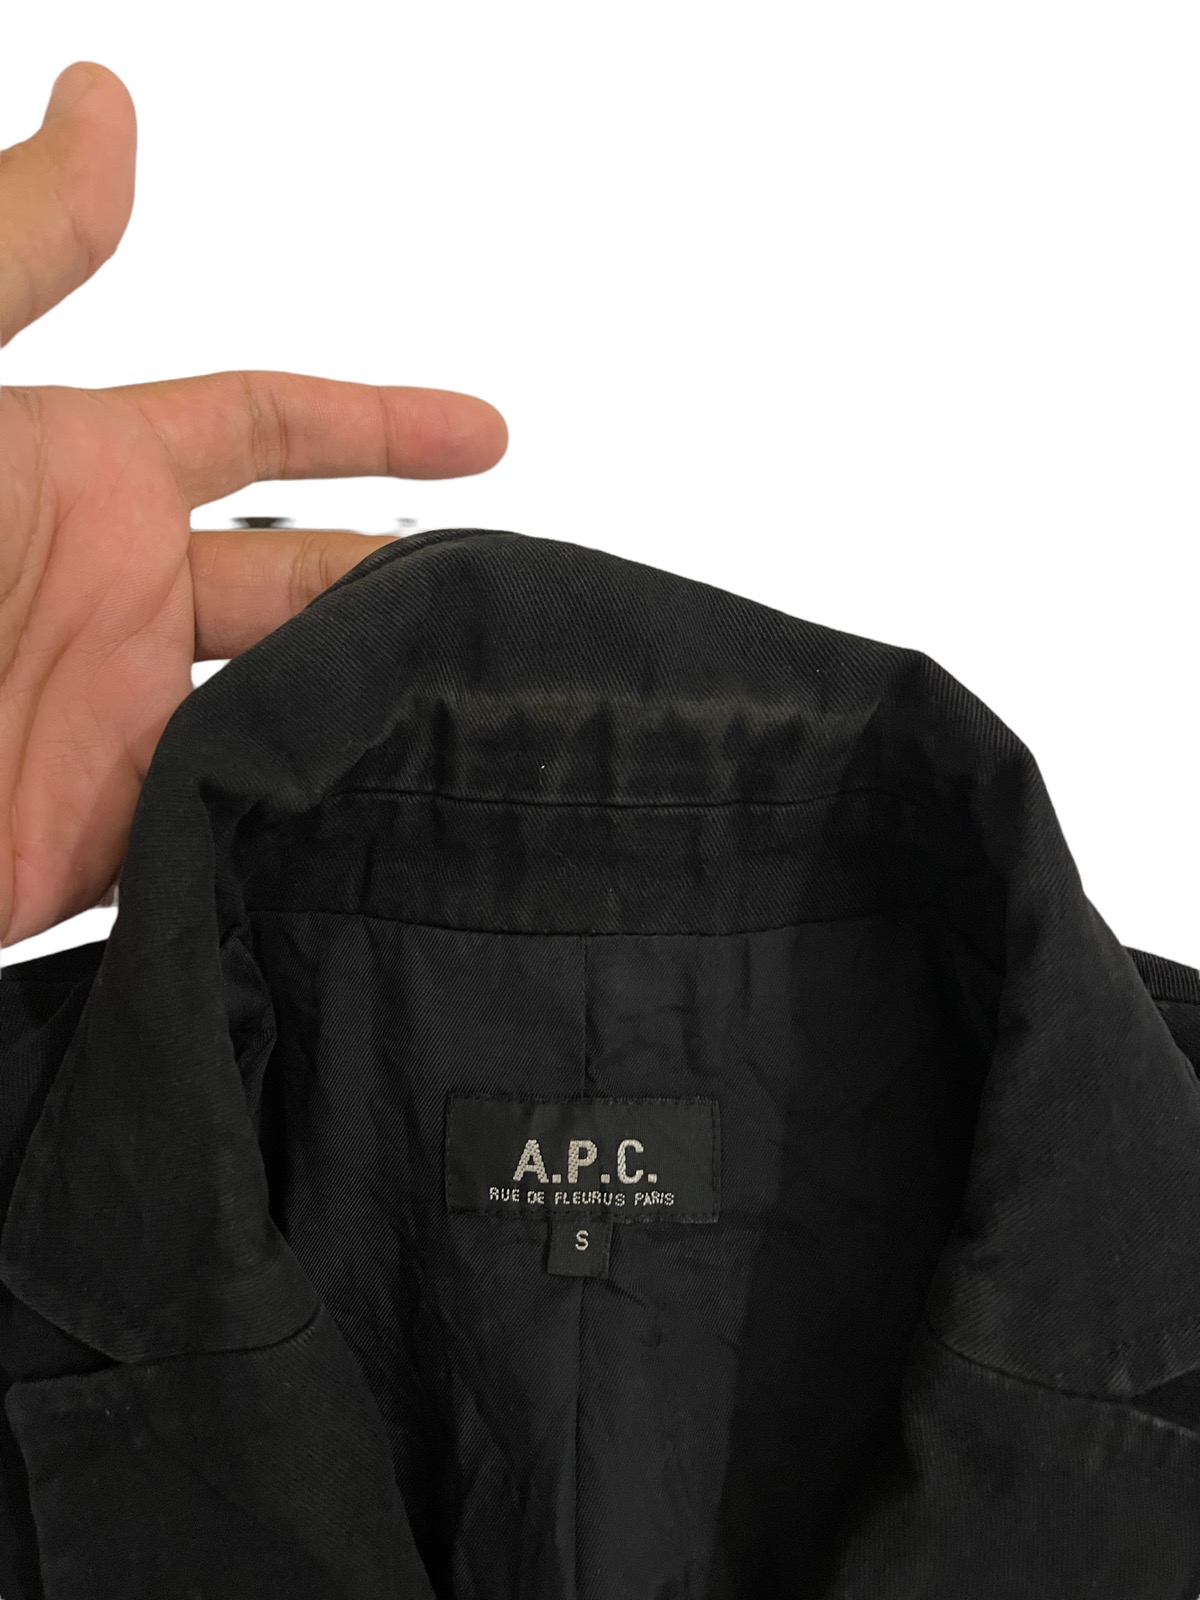 apc jacket - 9